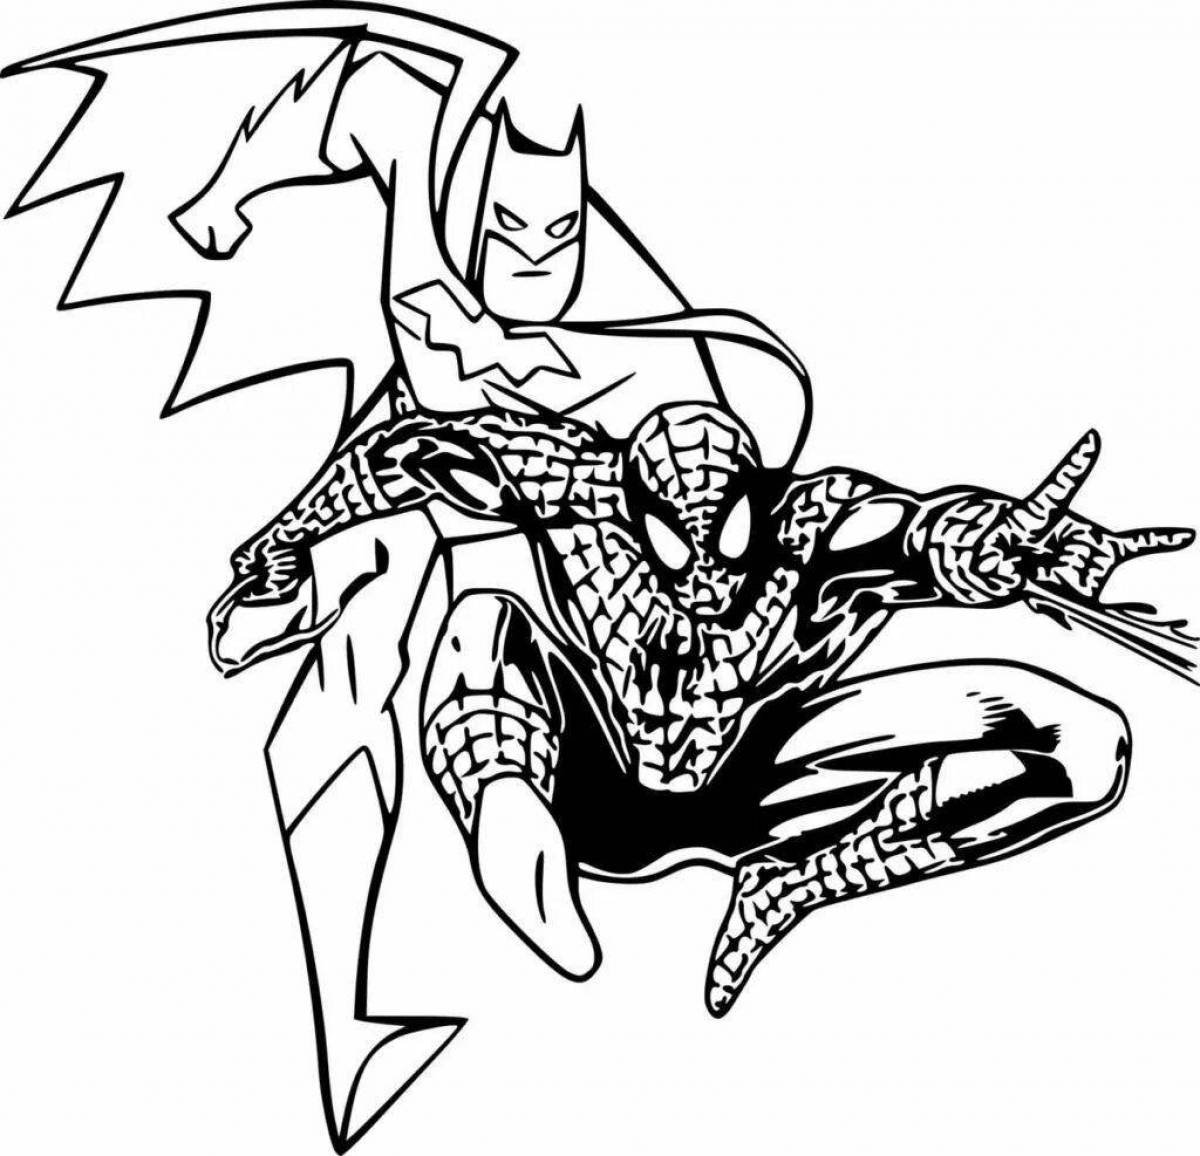 Увлекательная раскраска супермена и человека-паука